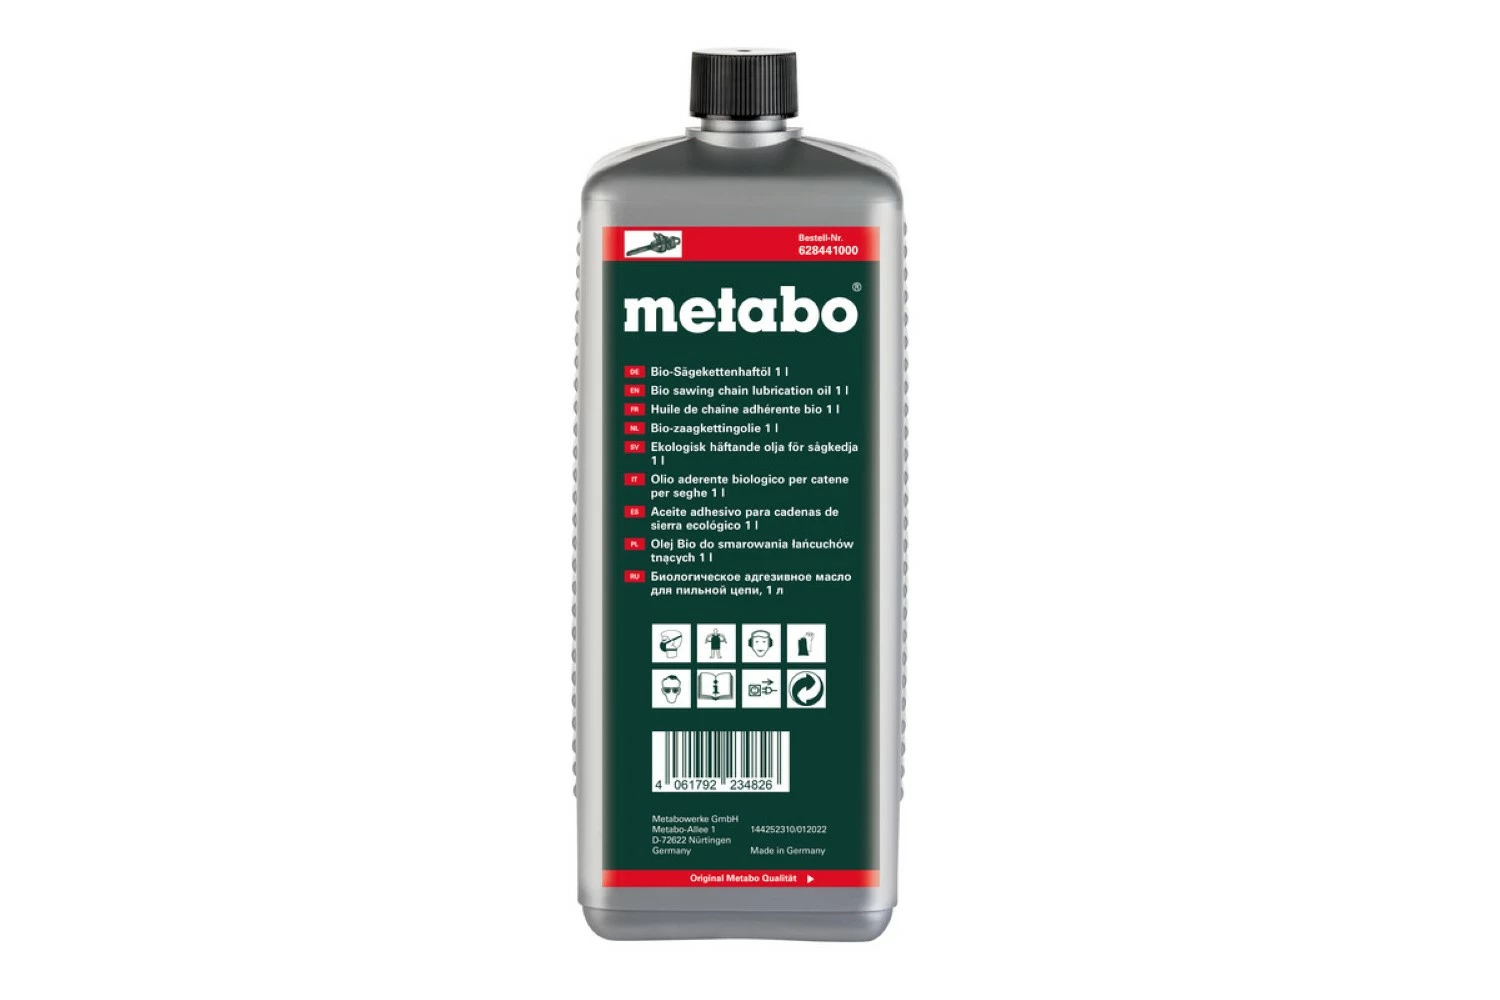 Metabo 628441000 Huile pour chaîne de tronçonneuse bio - 1L